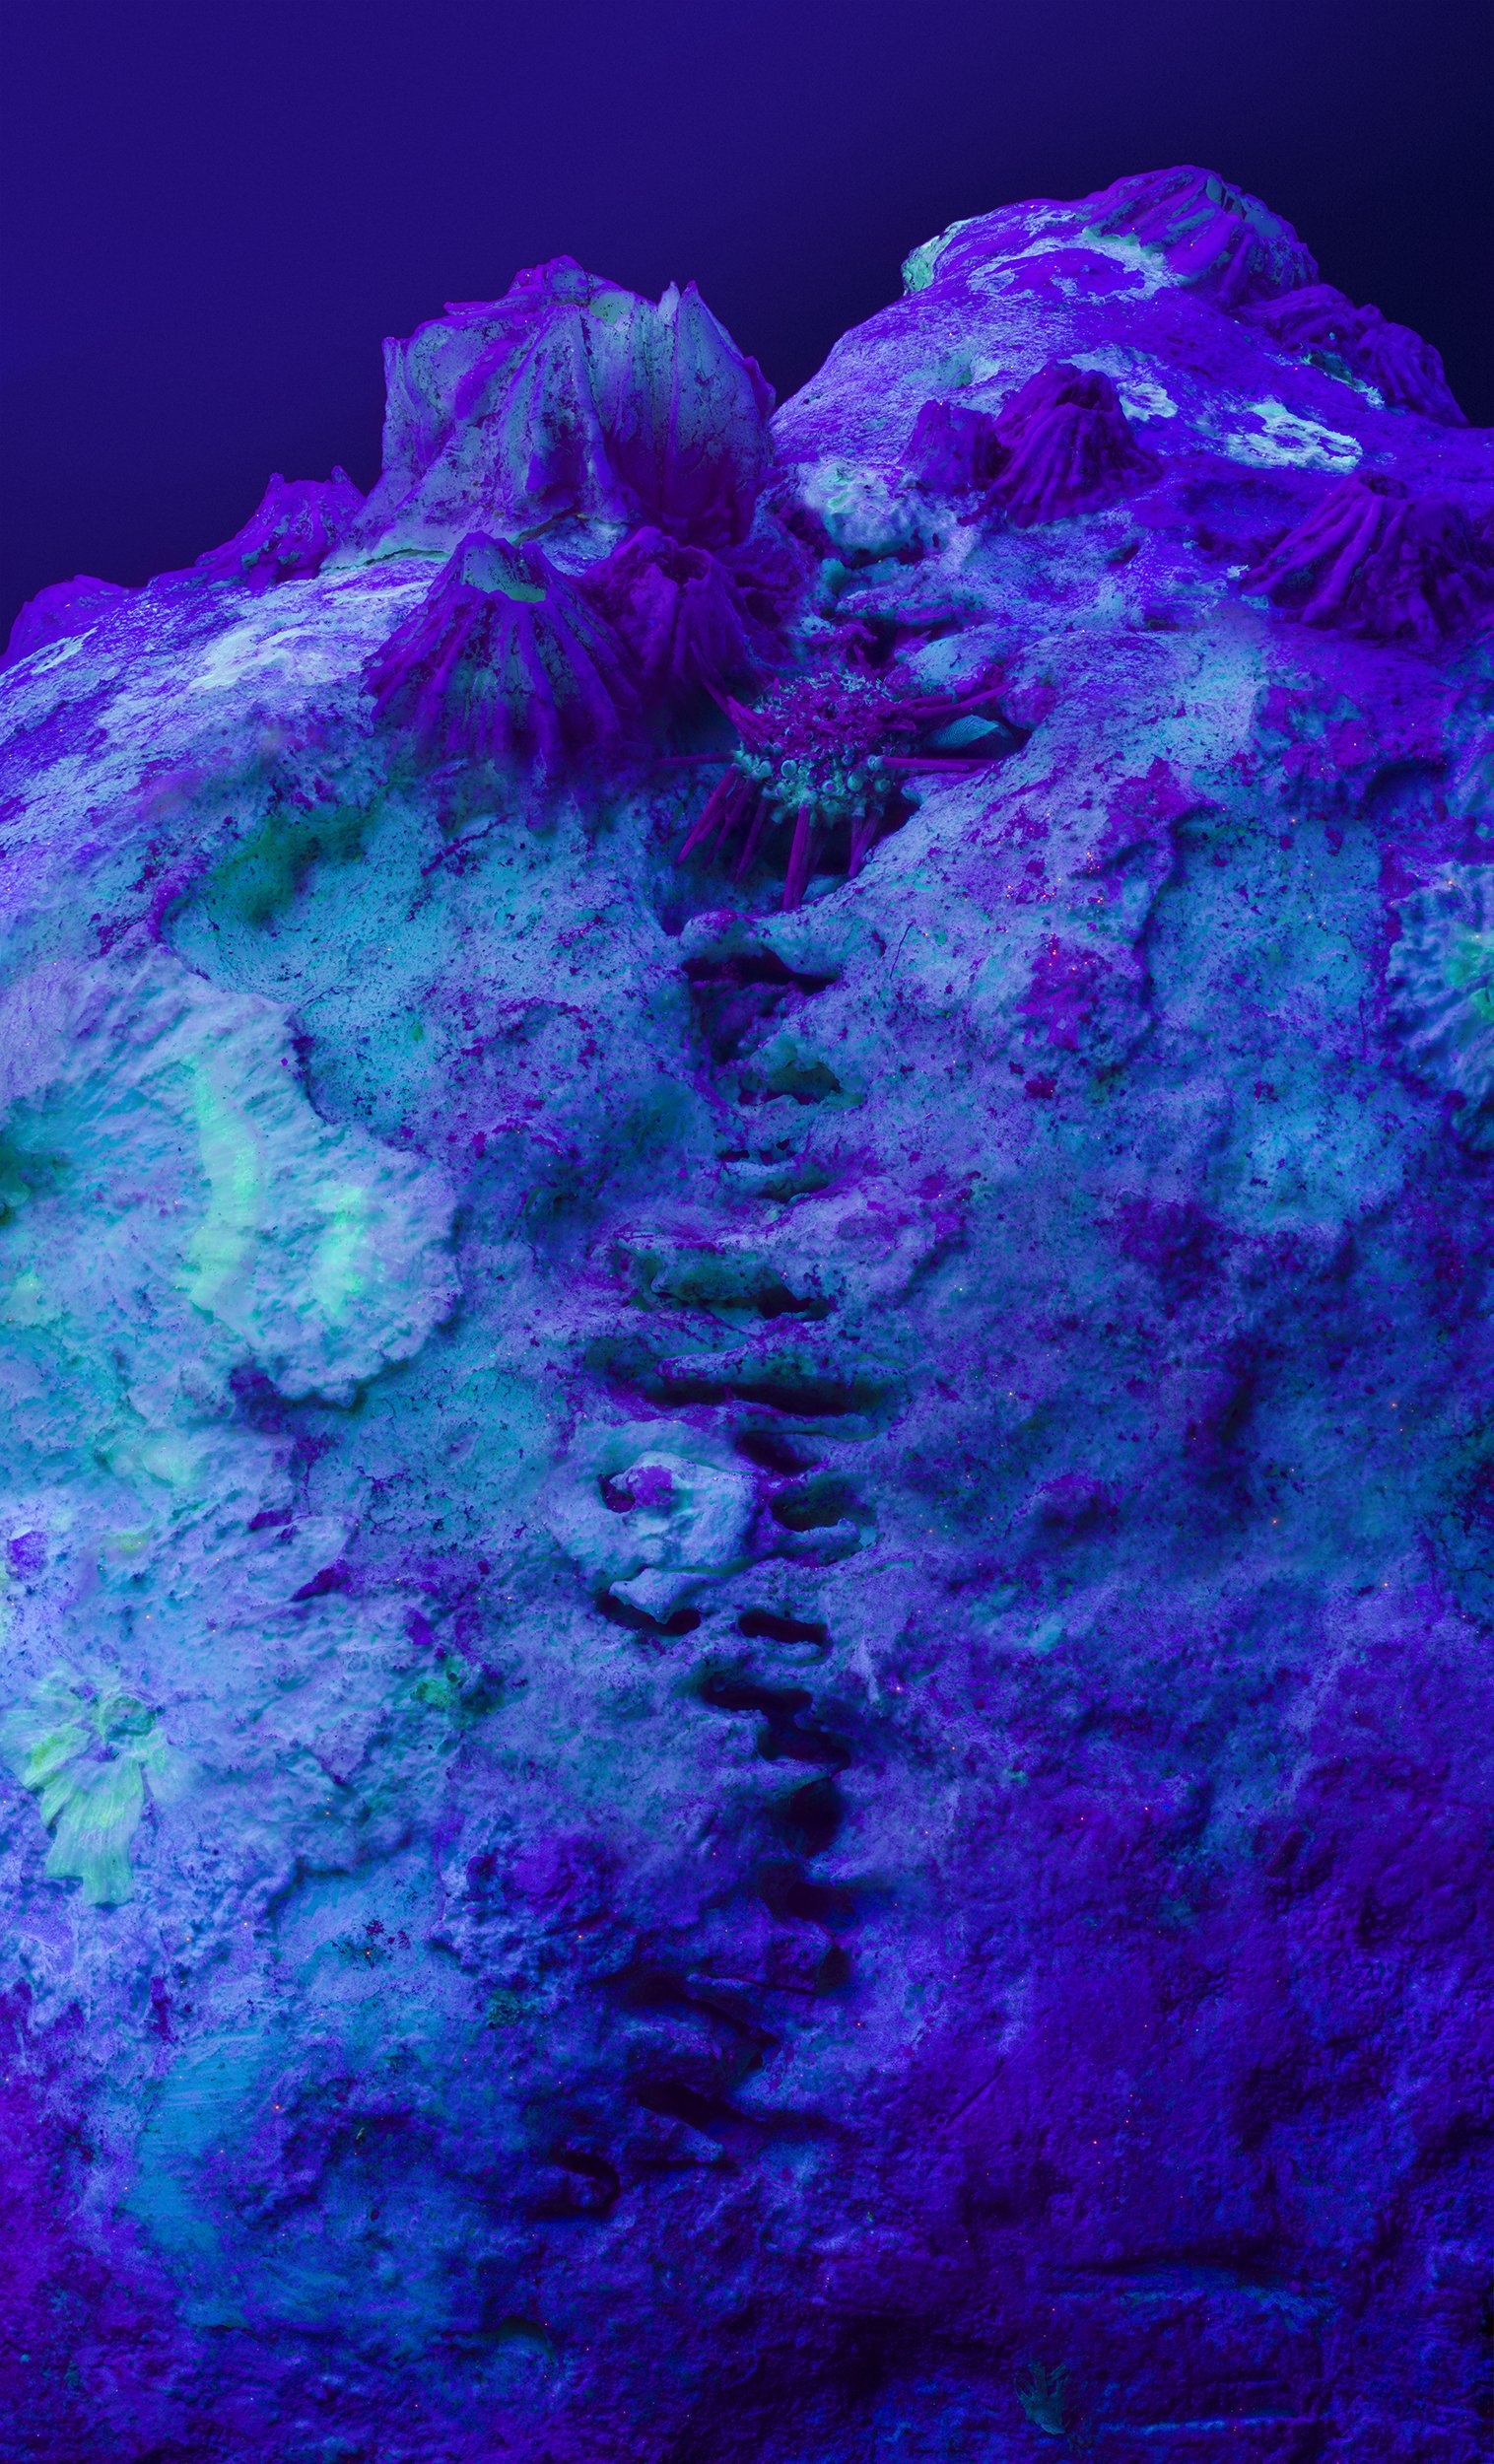 Ultraviolet microscopic landscape, private commission, 2022